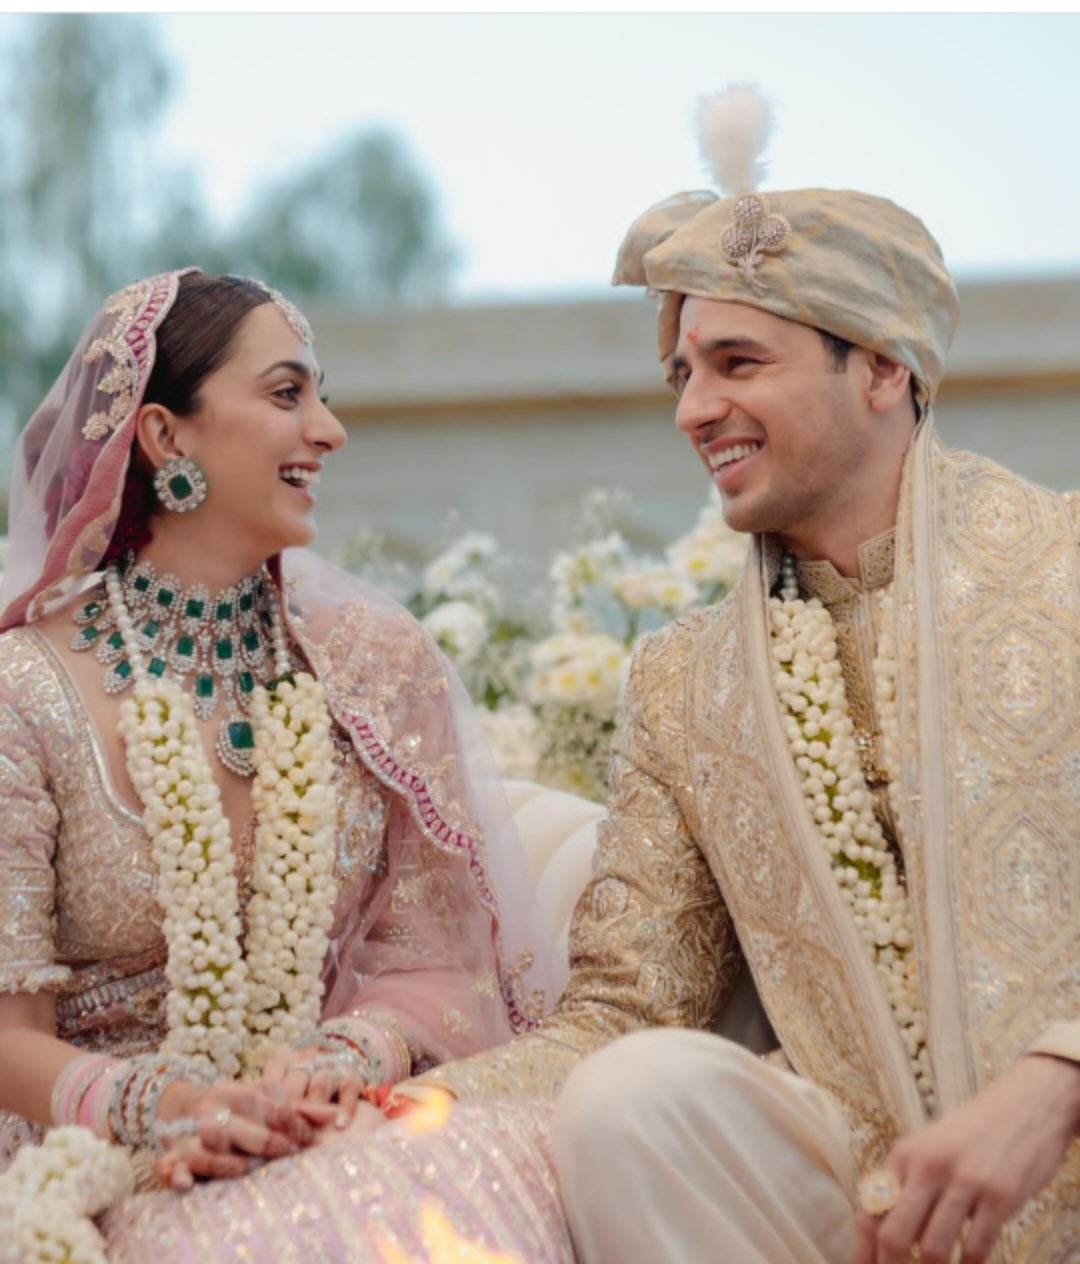  शादी के बाद सिद्धार्थ ने अपने सोशल नेटवर्किंग साइट इंस्टाग्राम अकाउंट पर अपनी शादी के तस्वीरें शेयर कीं, जो देखते ही देखते सोशल मीडिया पर वायरल होने लगी हैं. कियारा और सिद्धार्थ के चाहने वाले उनकी शादी की तस्वीरों पर जमकर प्यार लुटा रहे हैं. (फोटो साभारः Instagram @sidmalhotra)